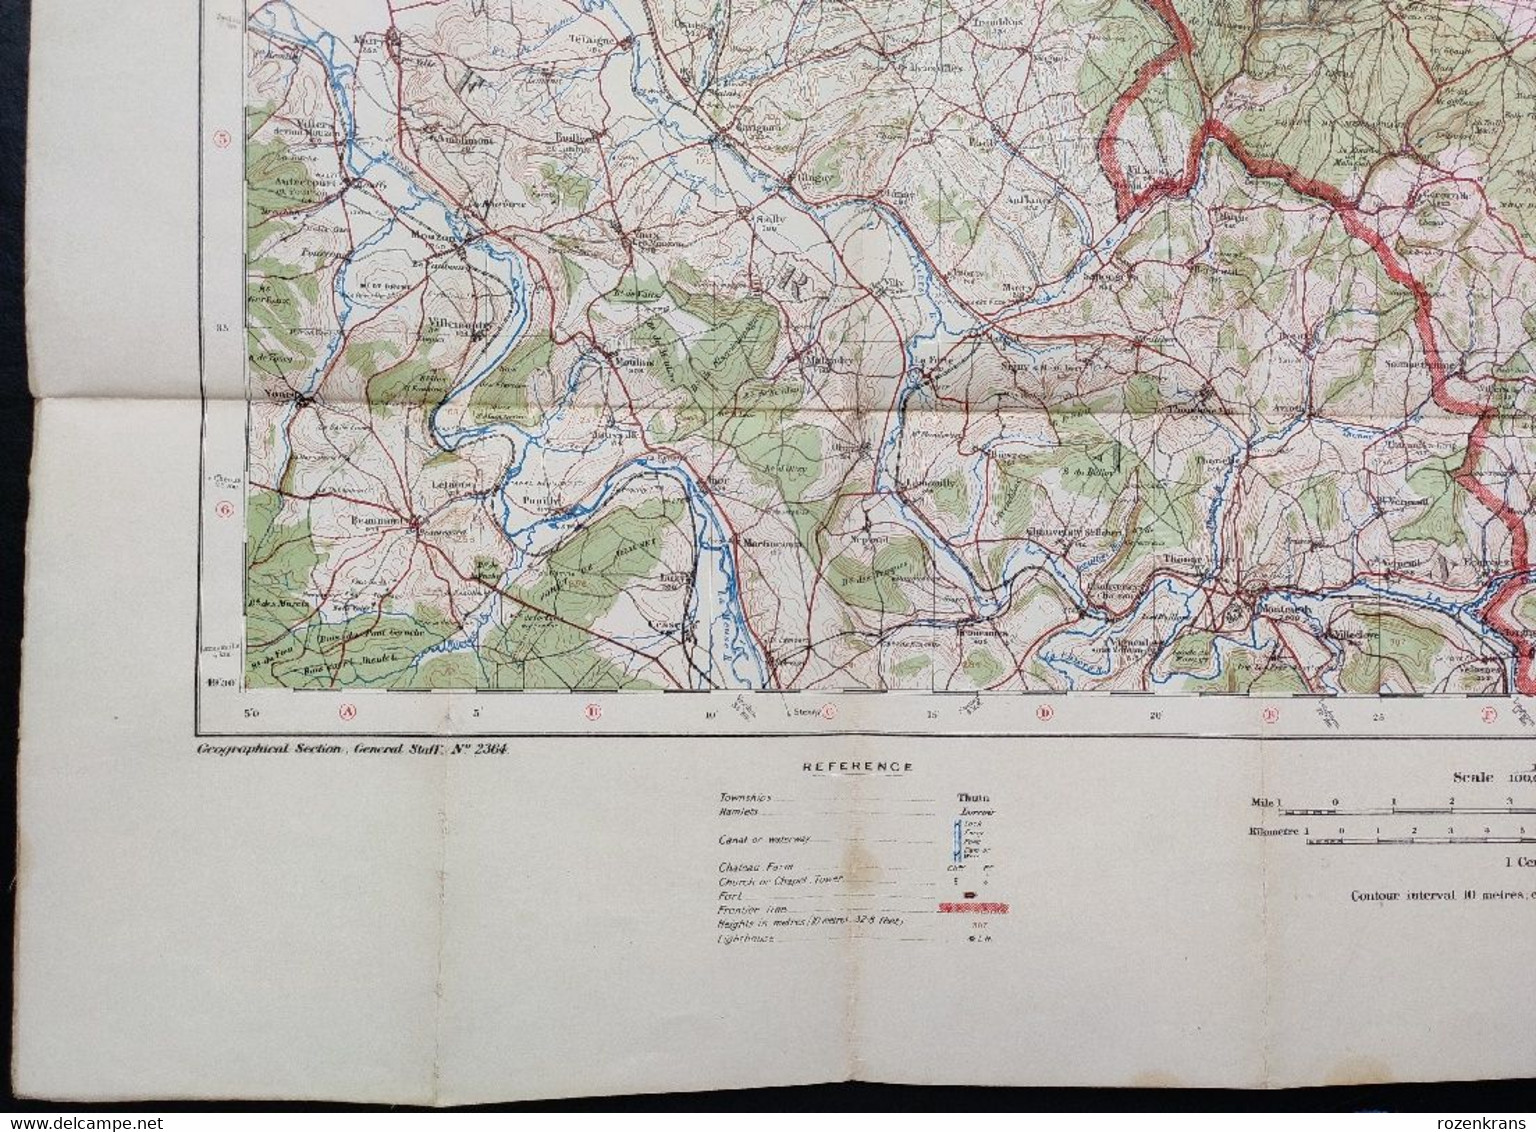 Carte Topographique Militaire UK War Office 1916 World War 1 WW1 Luxembourg Arlon Bahay Martelange Marbehan Oberkorn